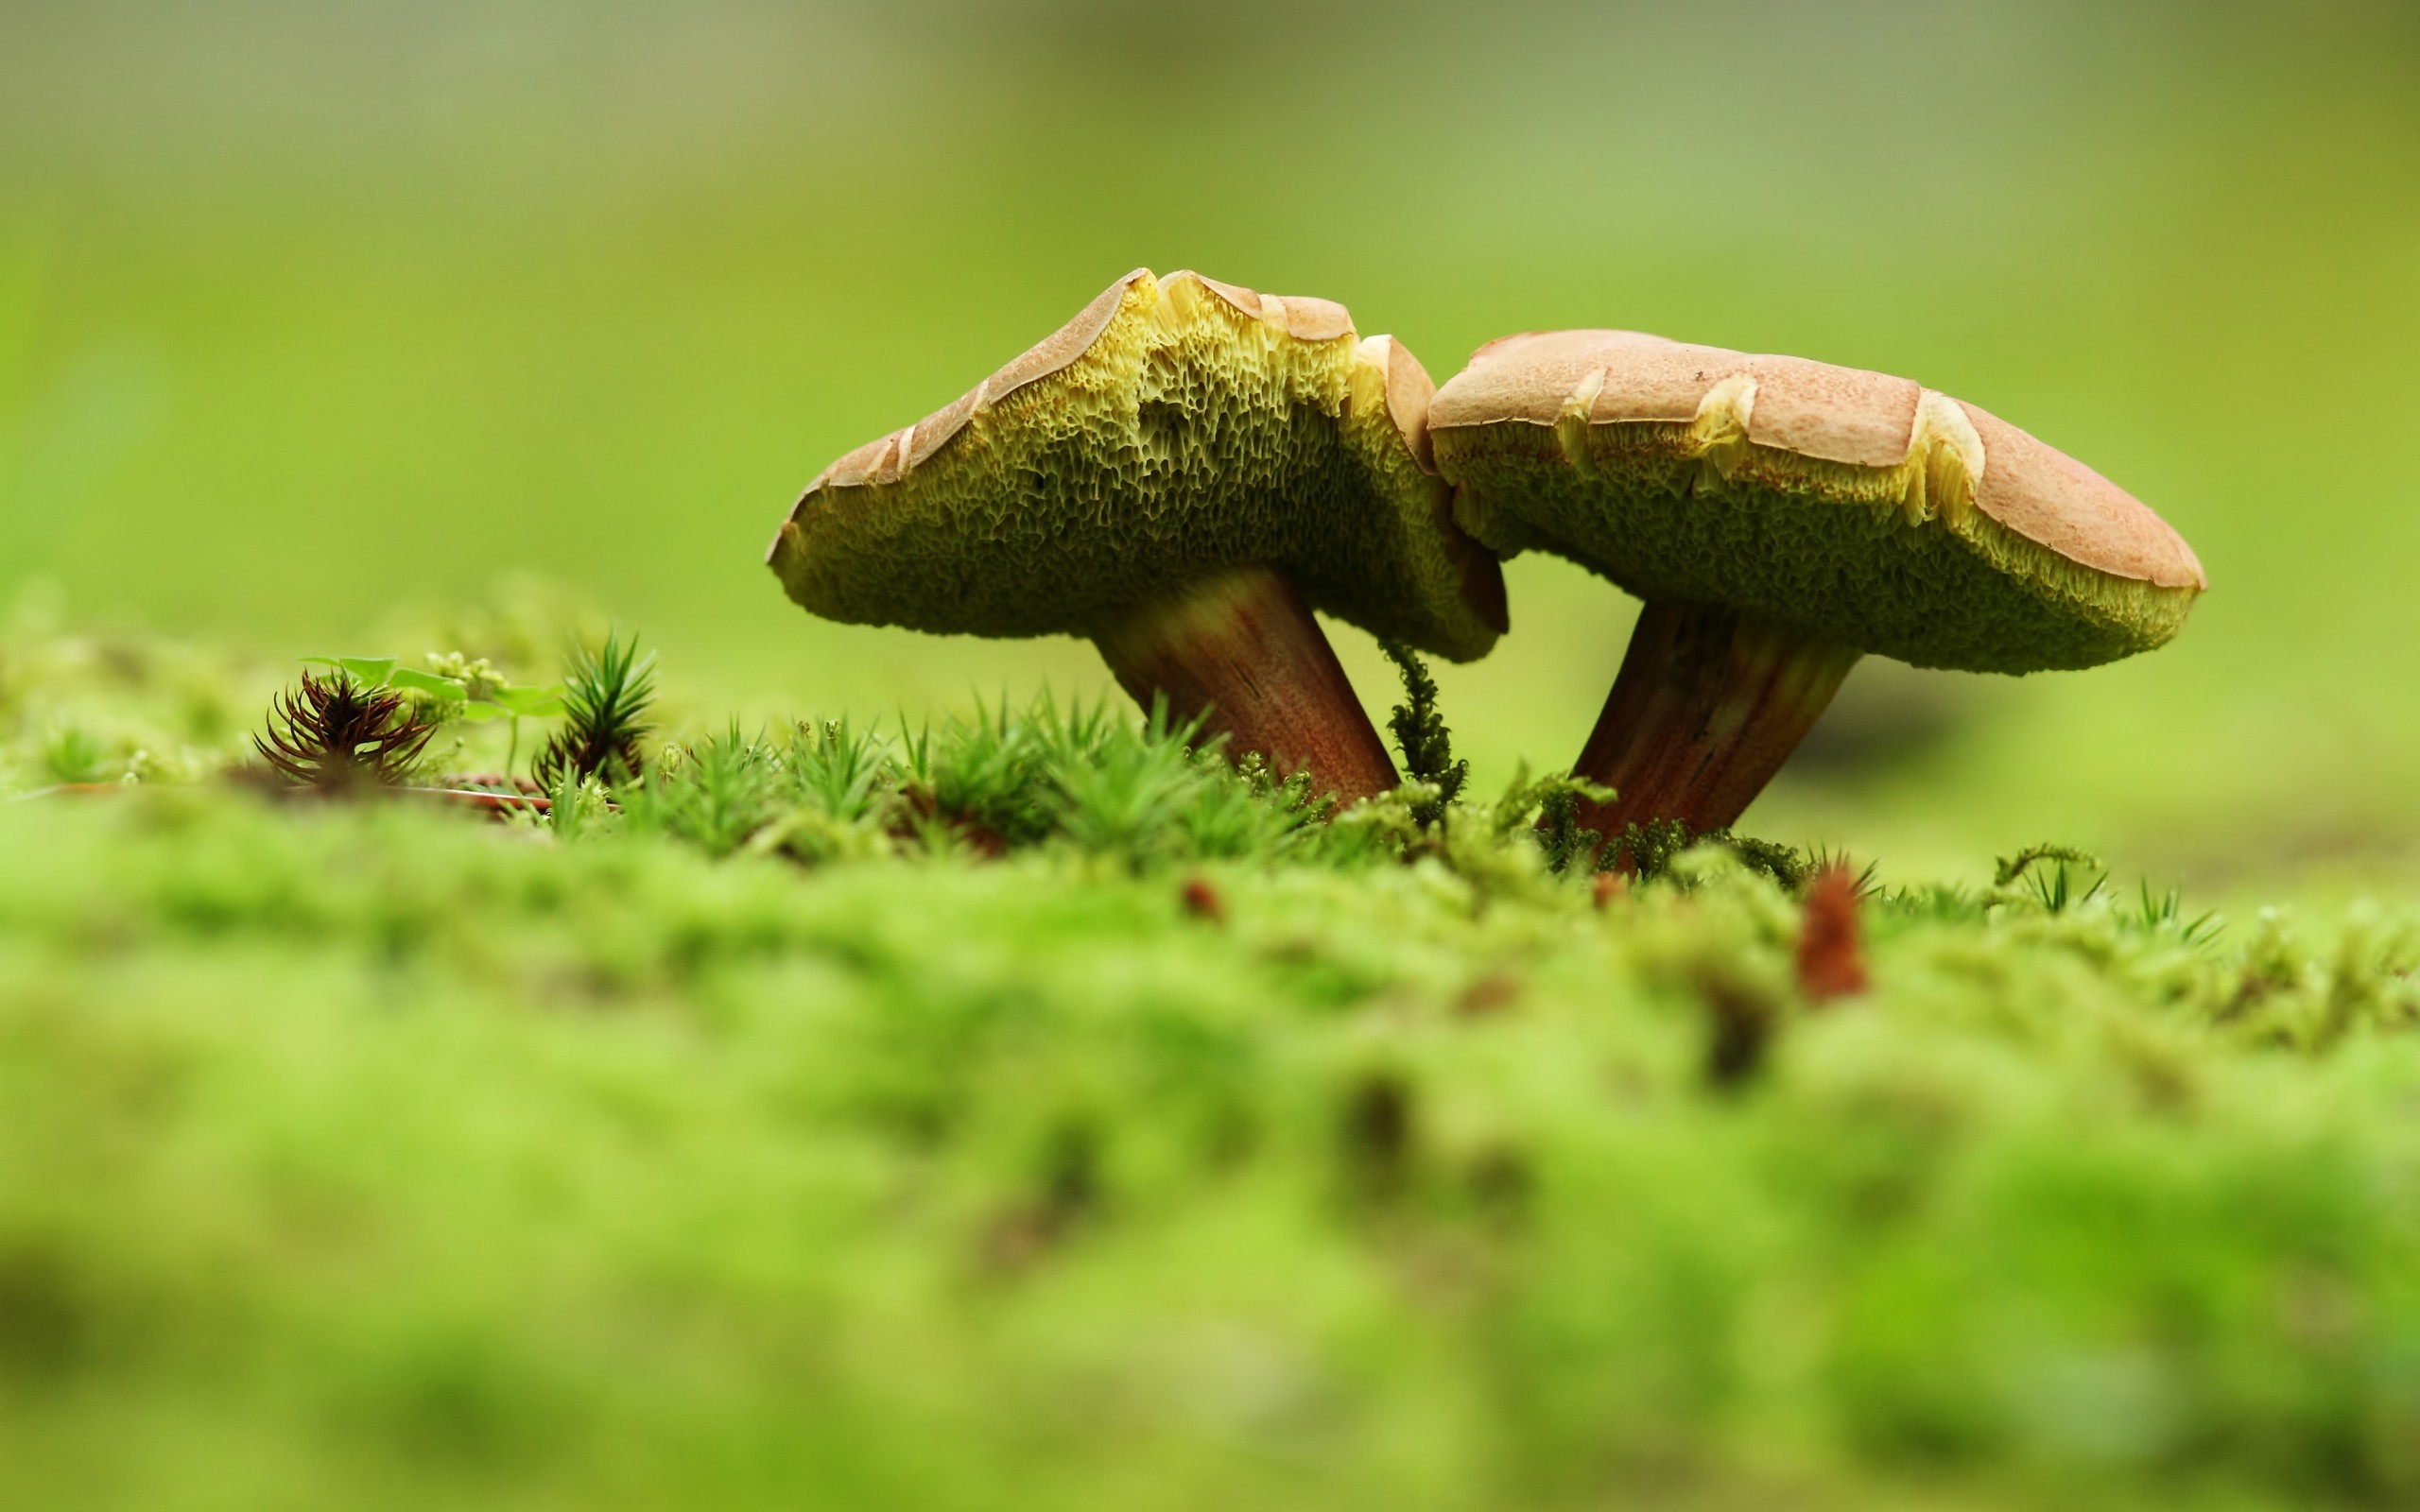 Zastaki.com - Два зеленых гриба на траве